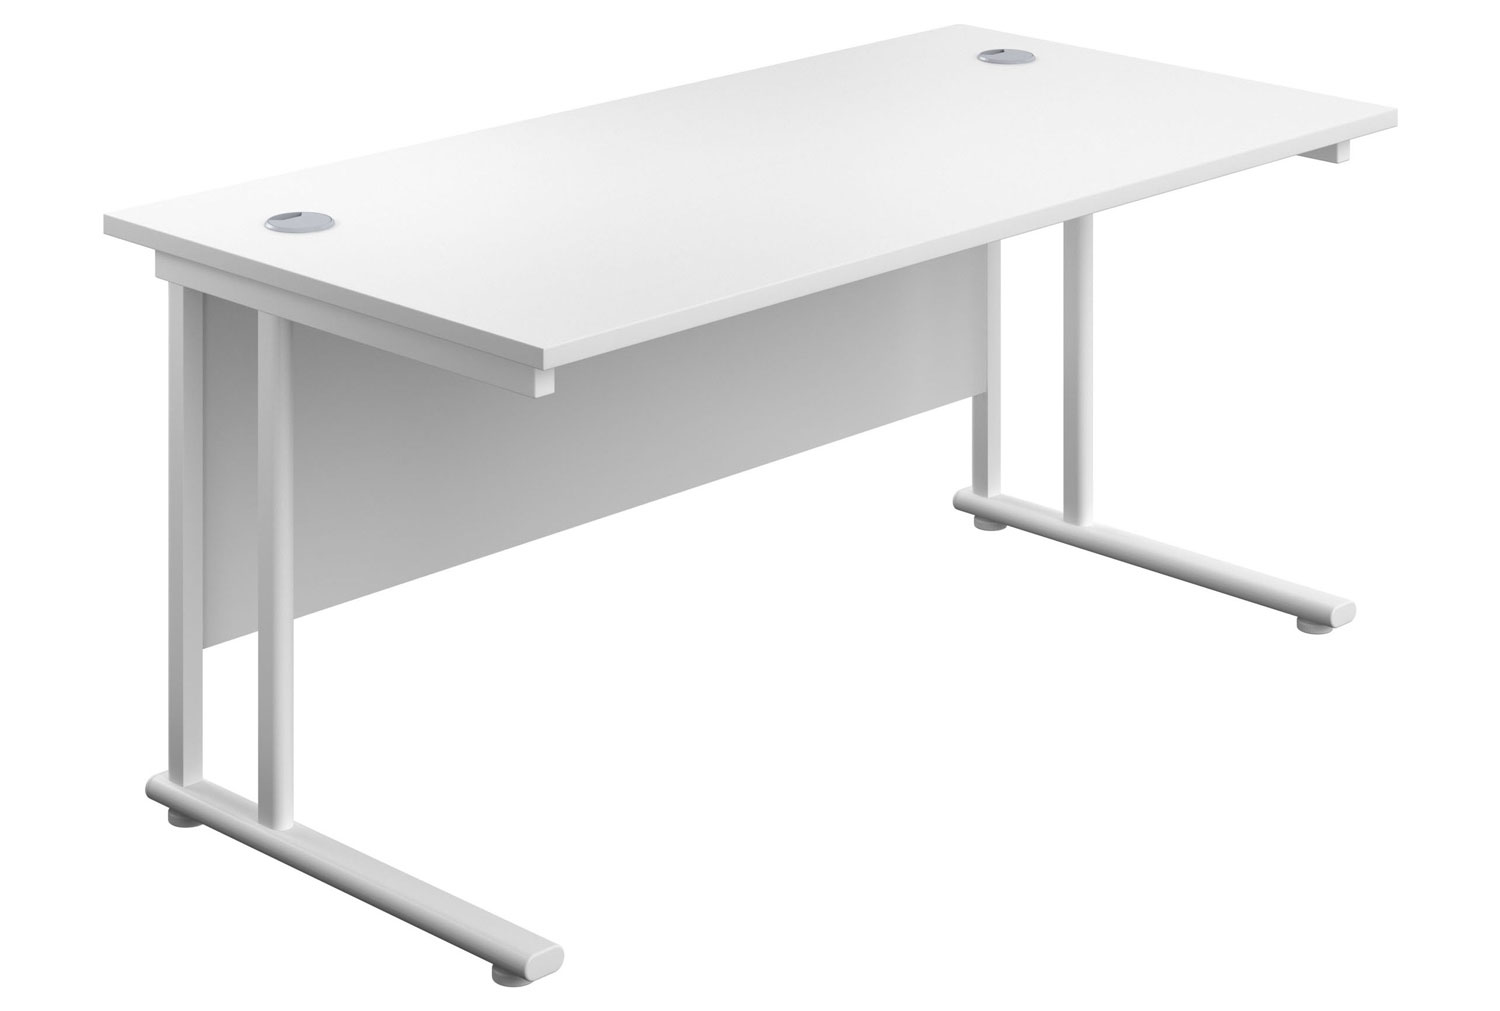 Progress II Rectangular Office Desk, 140wx80dx73h (cm), White Frame, White